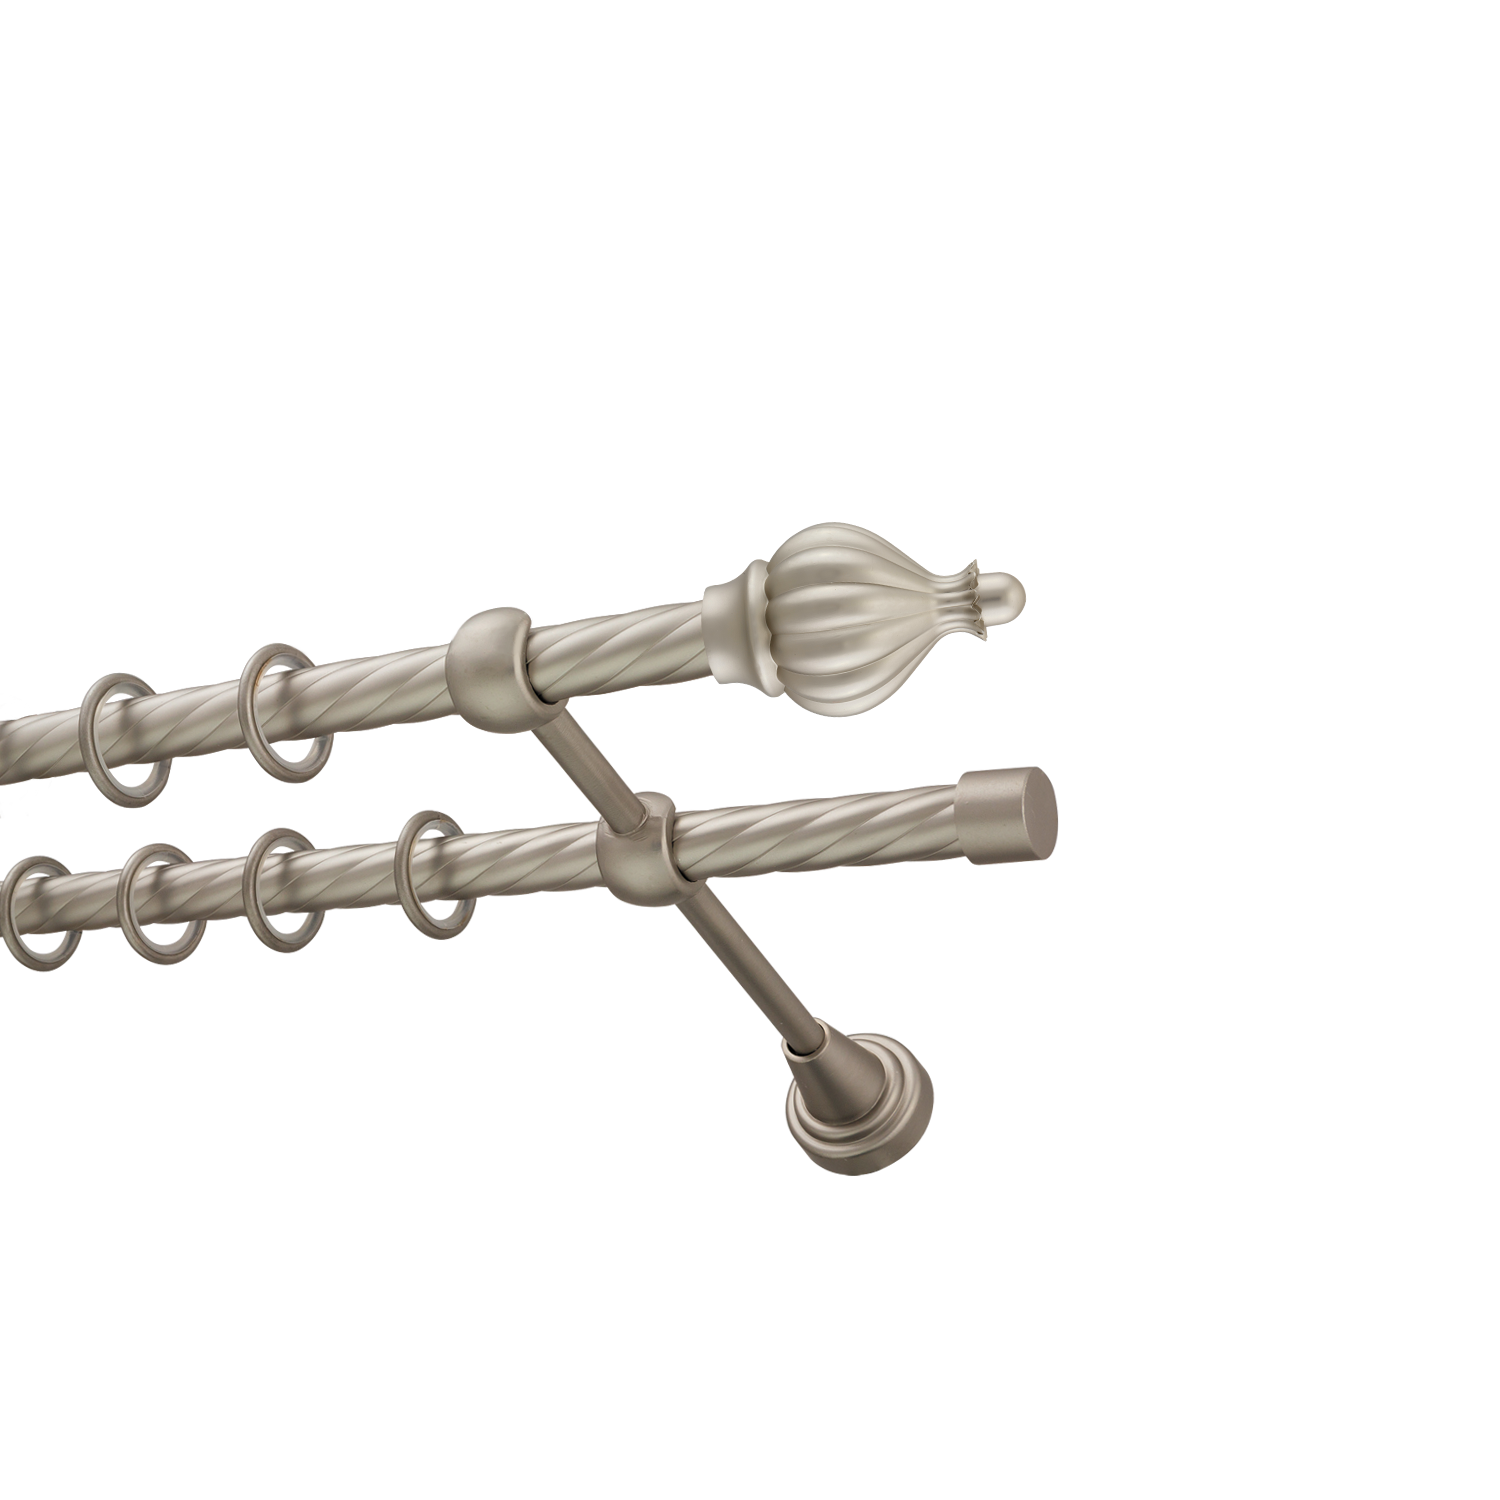 Металлический карниз для штор Афродита, двухрядный 16/16 мм, сталь, витая штанга, длина 240 см